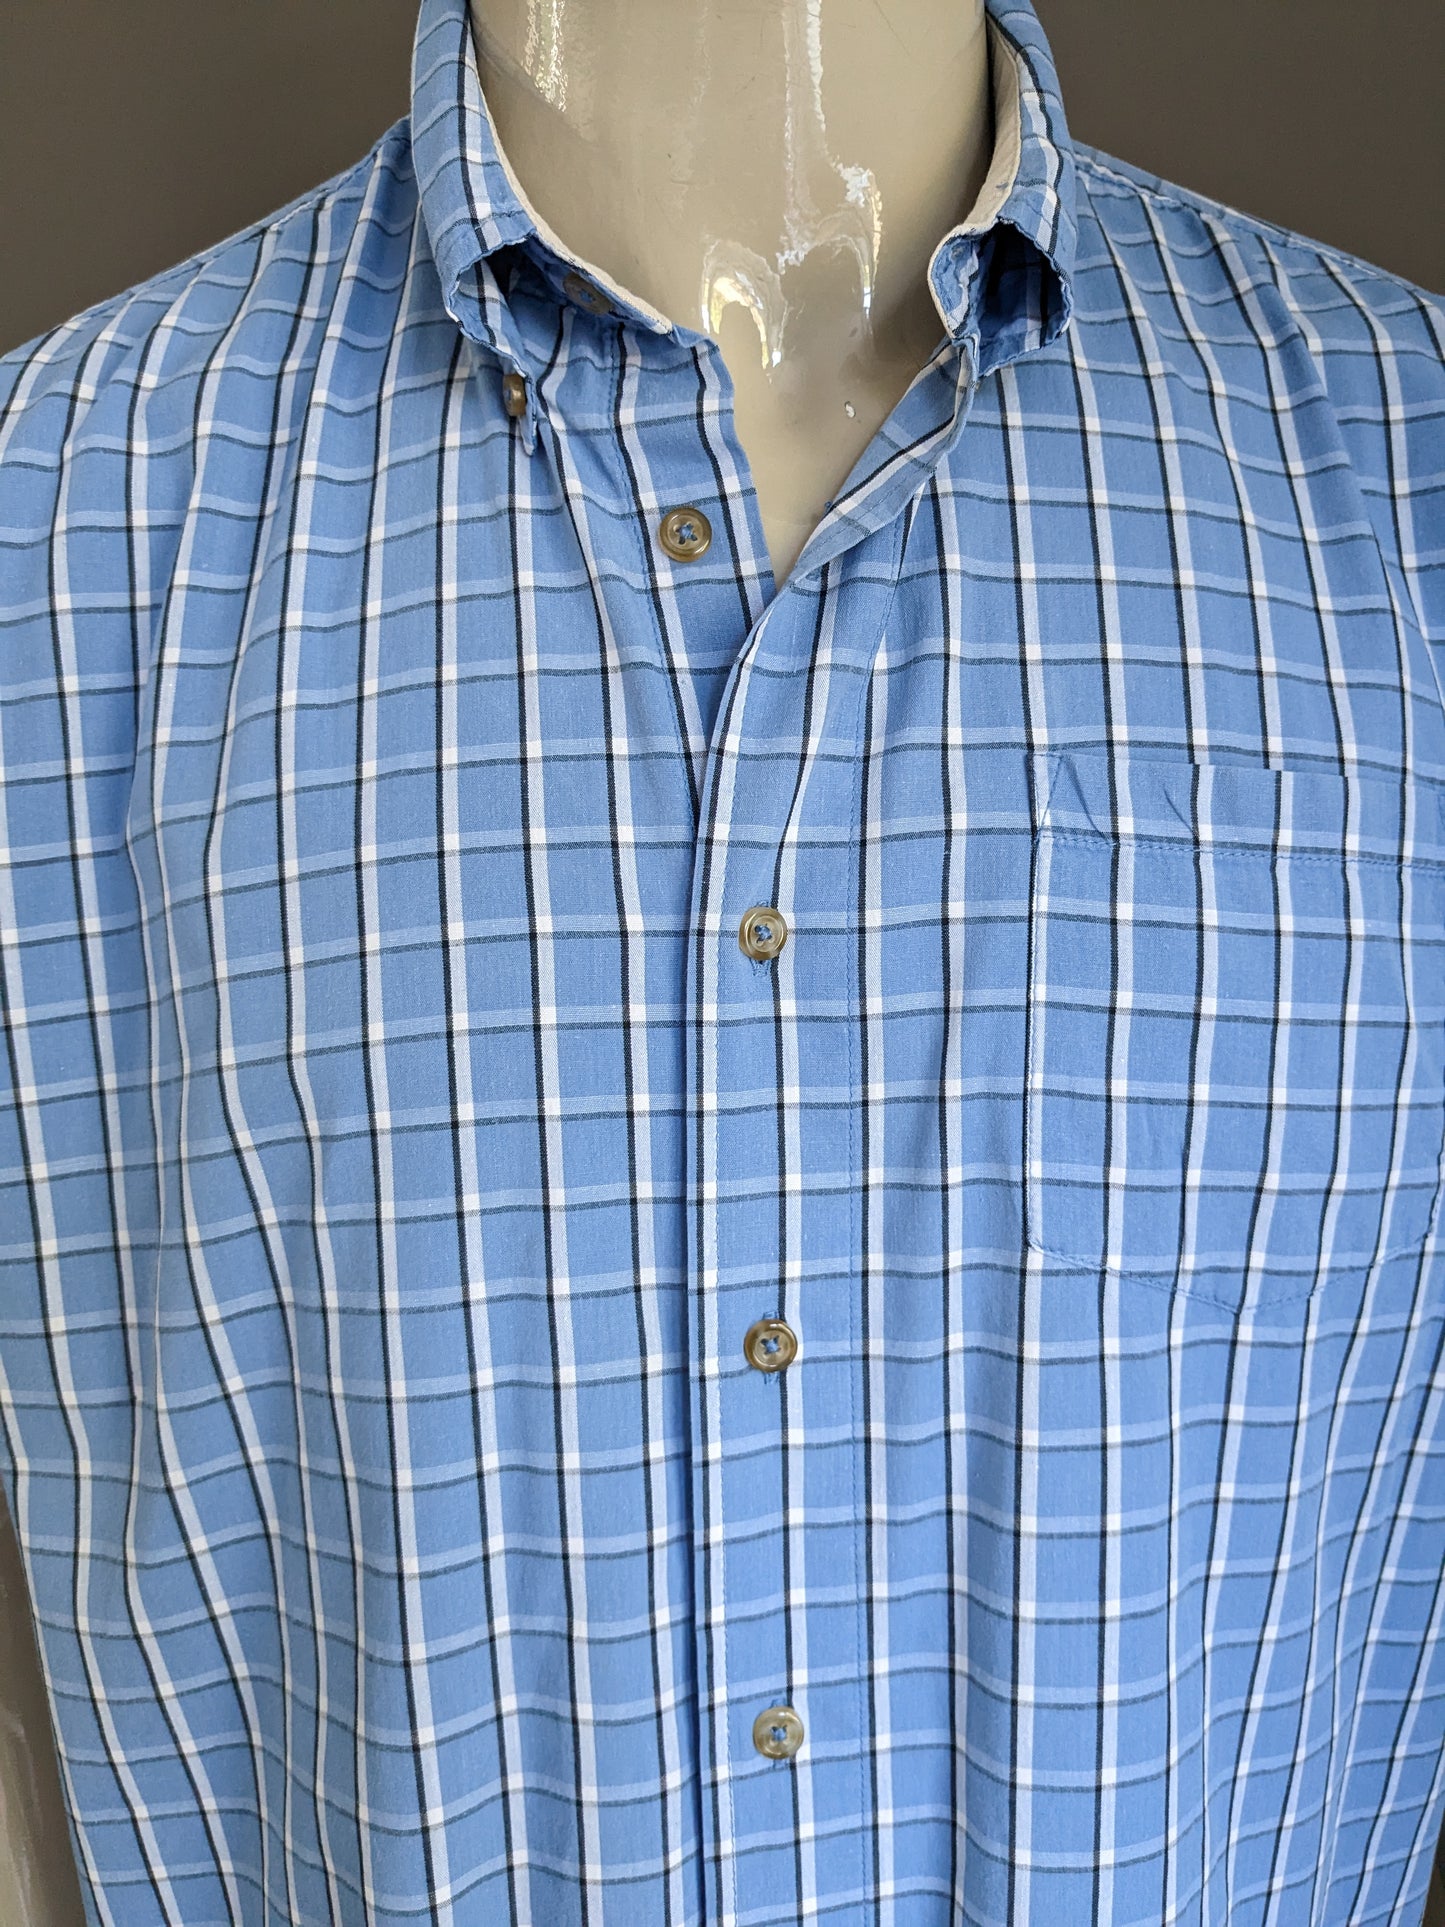 Manche courte de la chemise Wrangler. Bleu blanc vérifié. Taille l / xl.